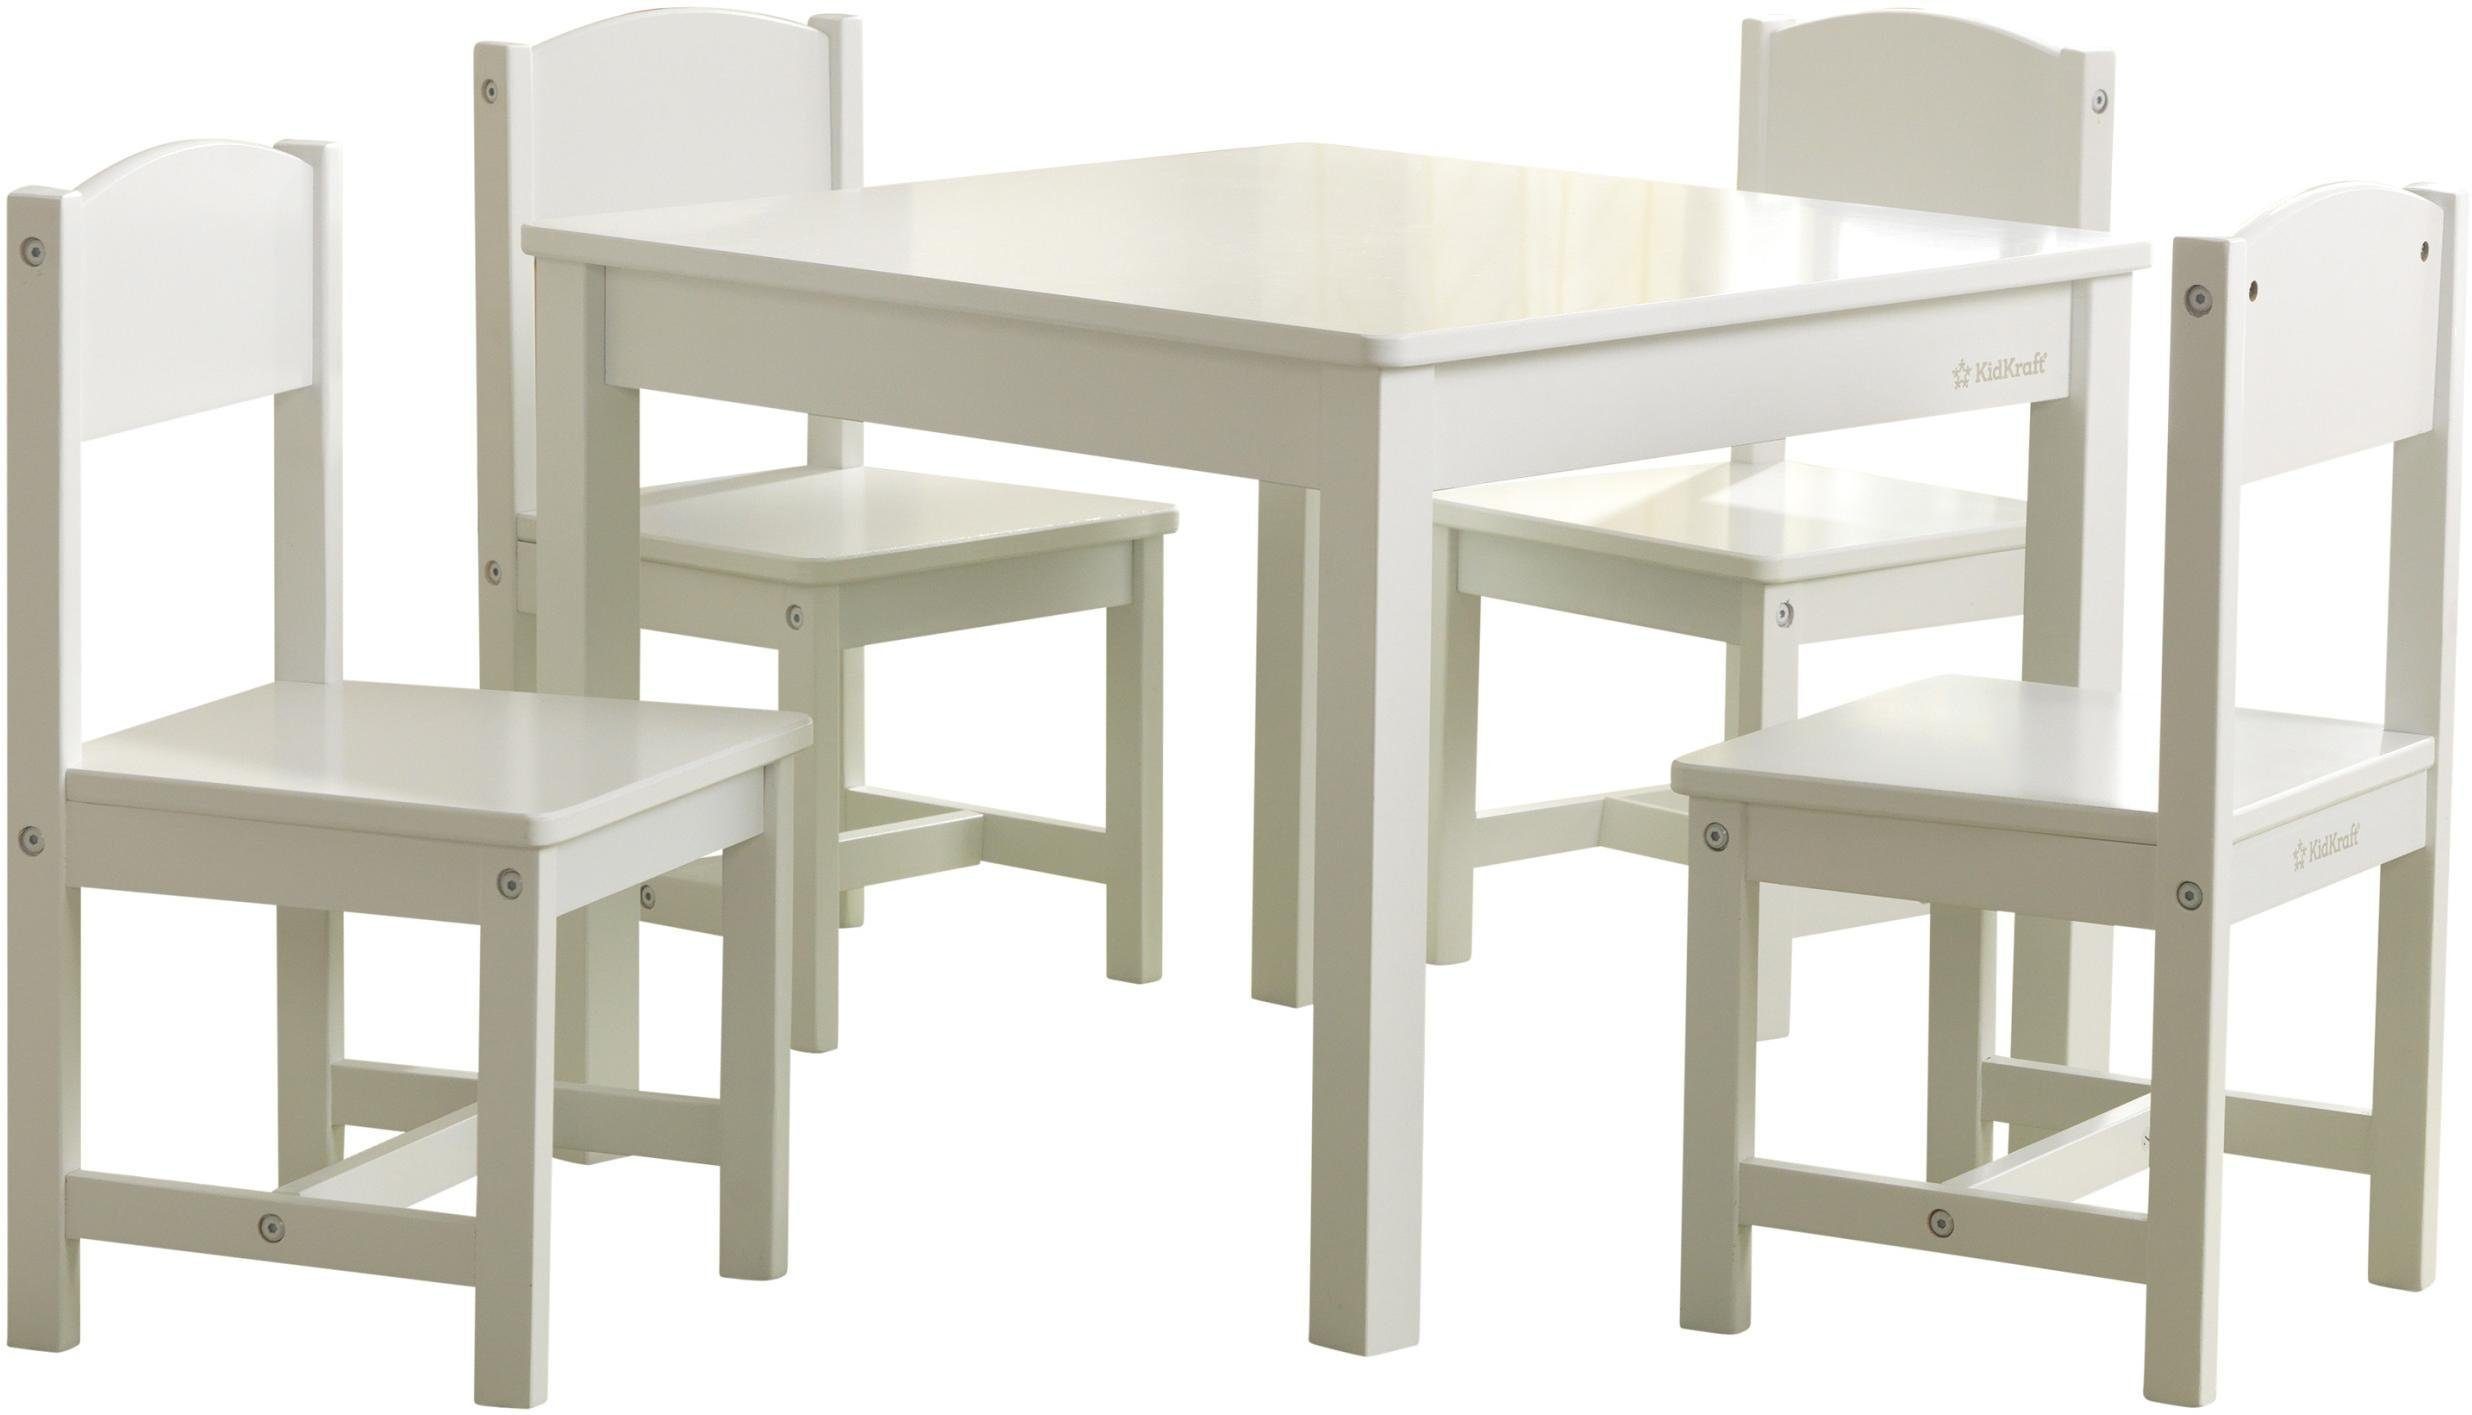 KidKraft® Kindersitzgruppe Farmhouse, (5-tlg), Tisch mit 4 Stühlen